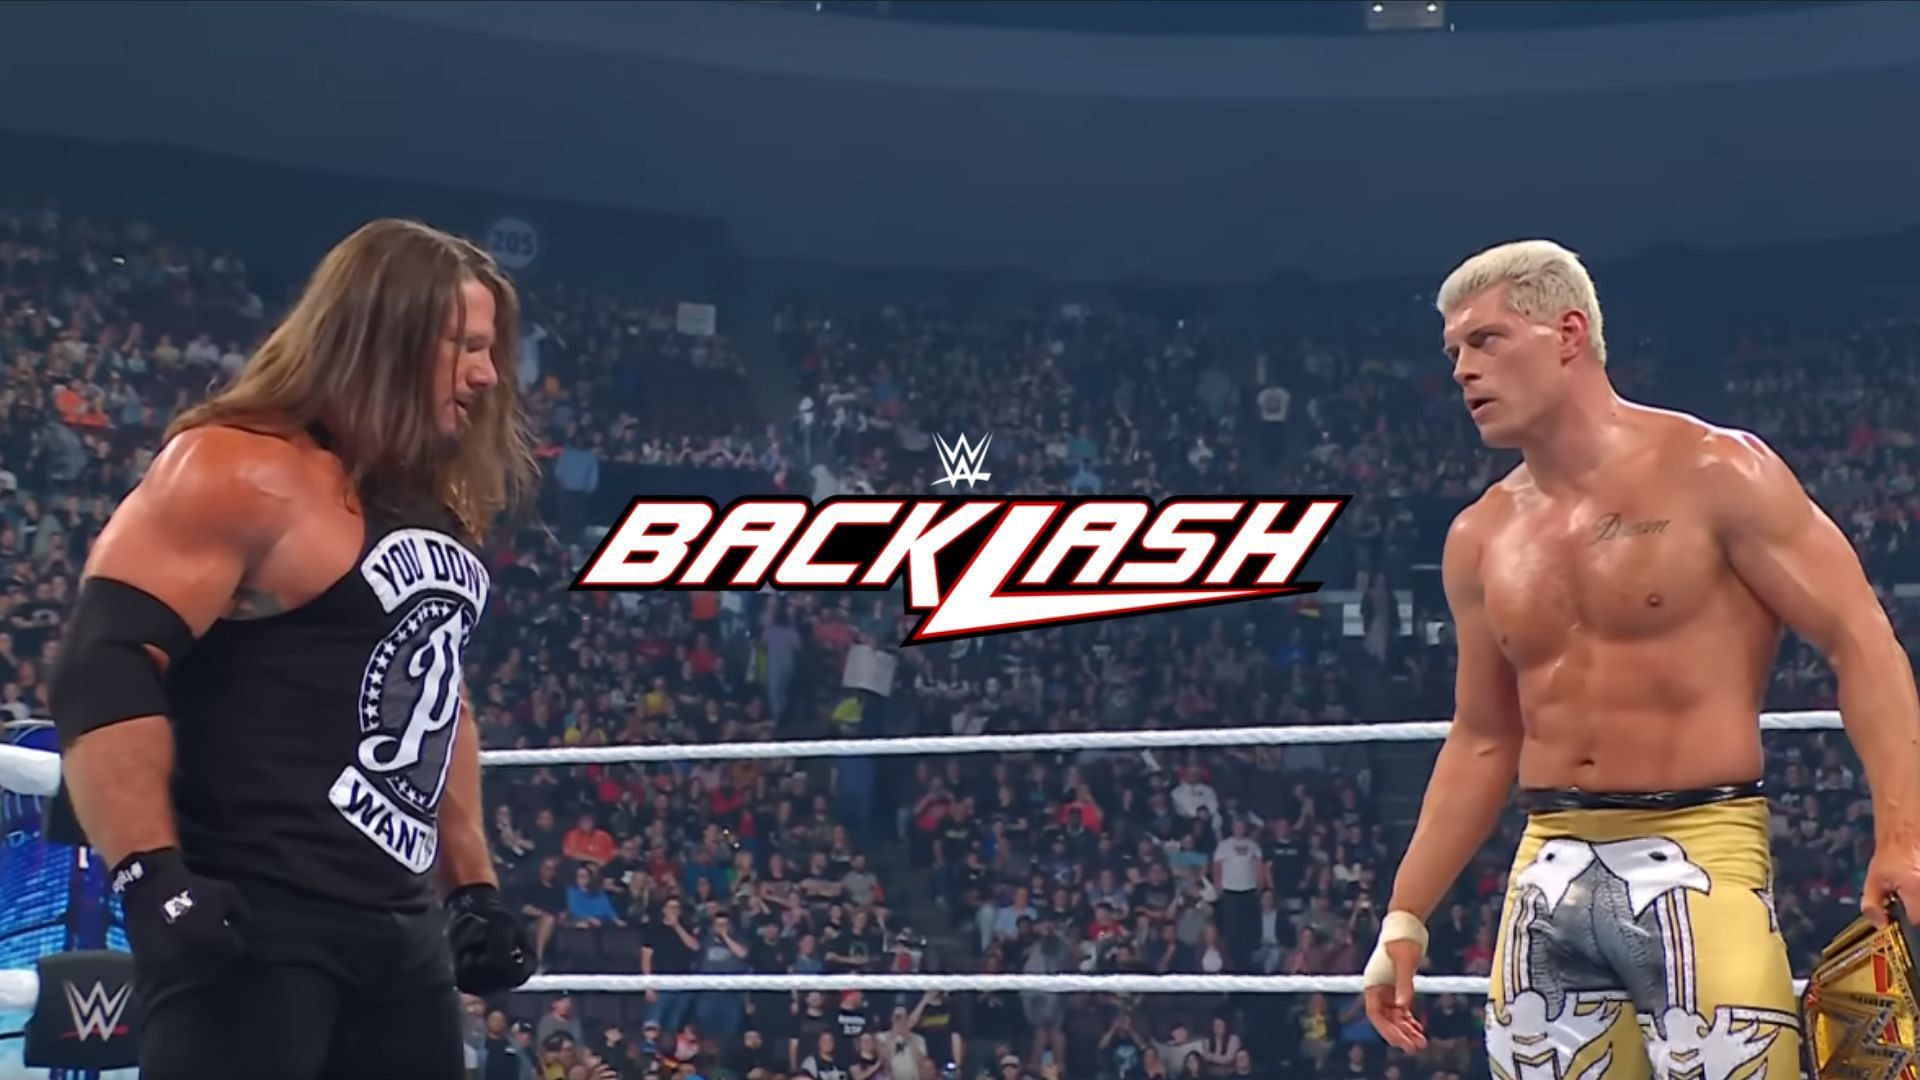 जानिए WWE Backlash France में होने वाले मैच को लेकर क्या कहा गया?